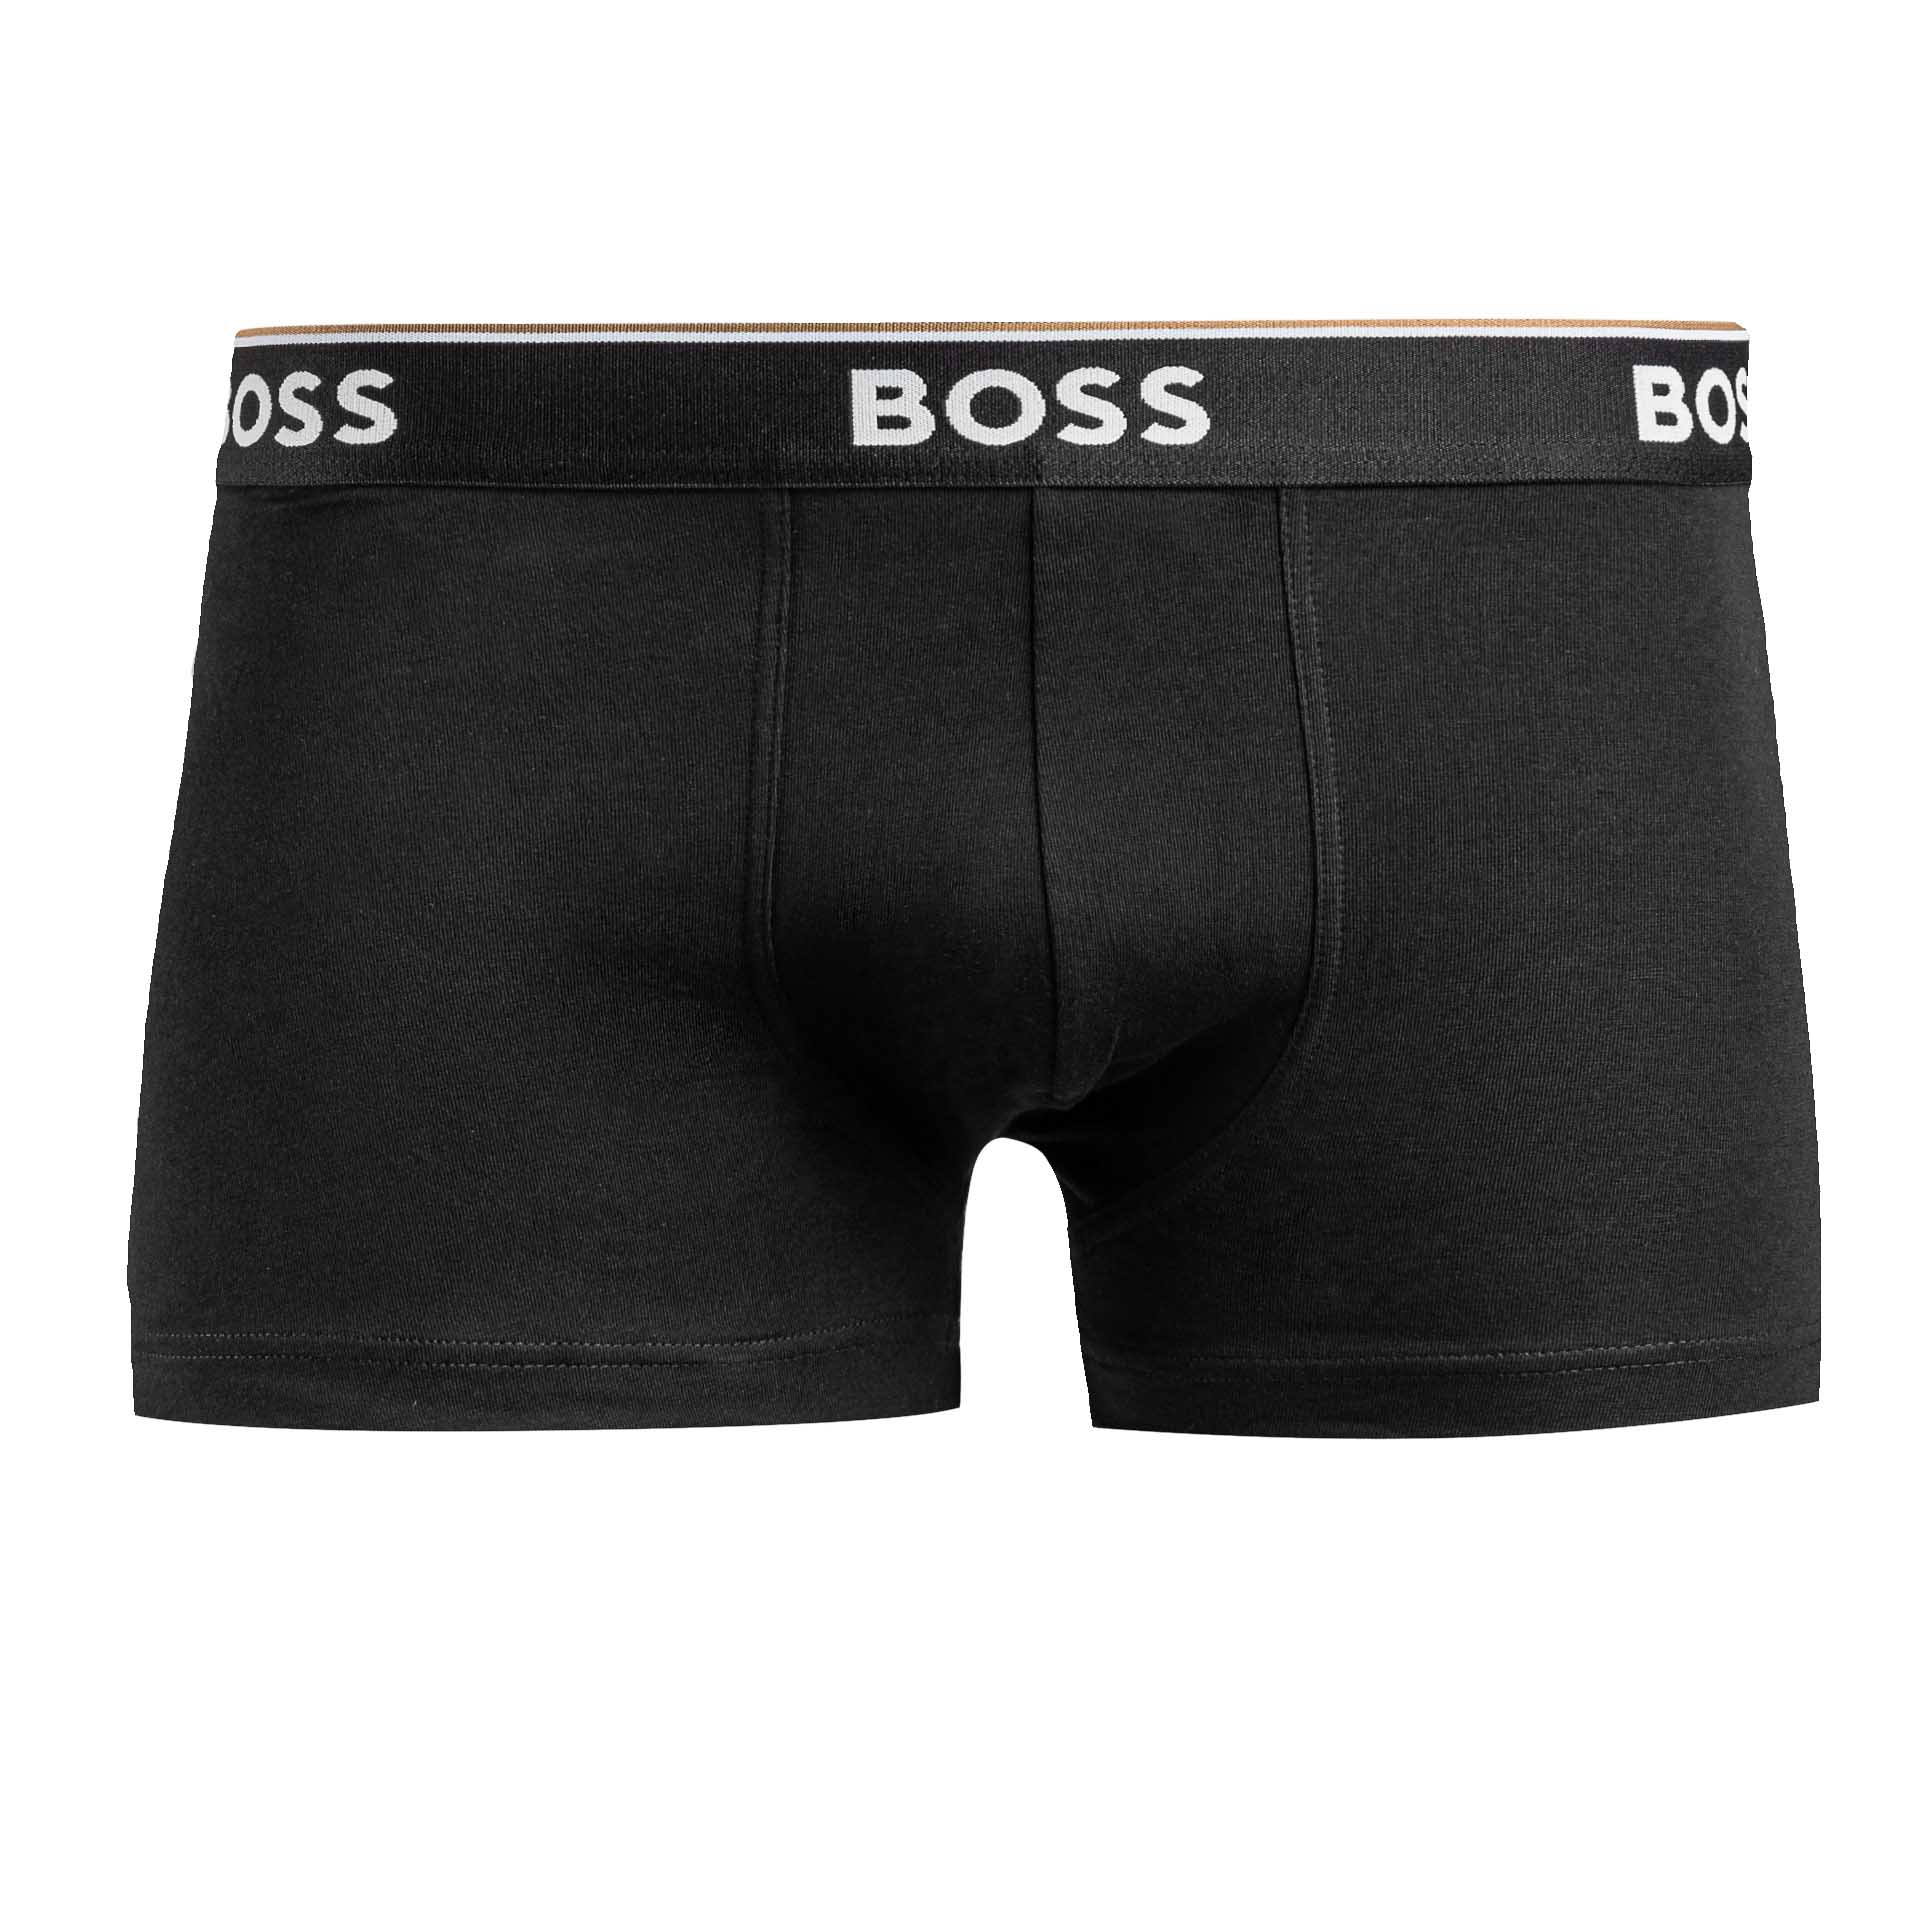 Bokserki męskie Boss 3pack